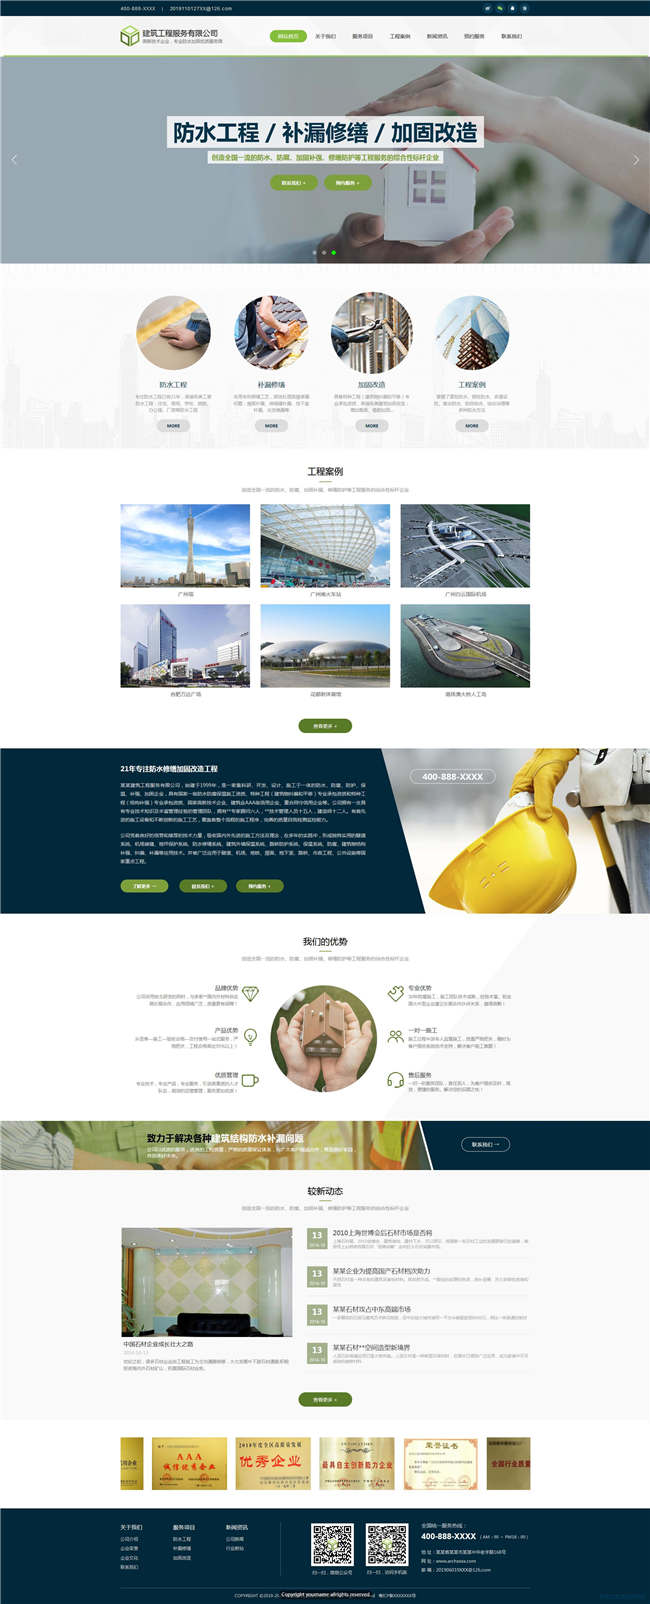 建筑工程公司房地产物业网站Wordpress模板(带手机站)预览图